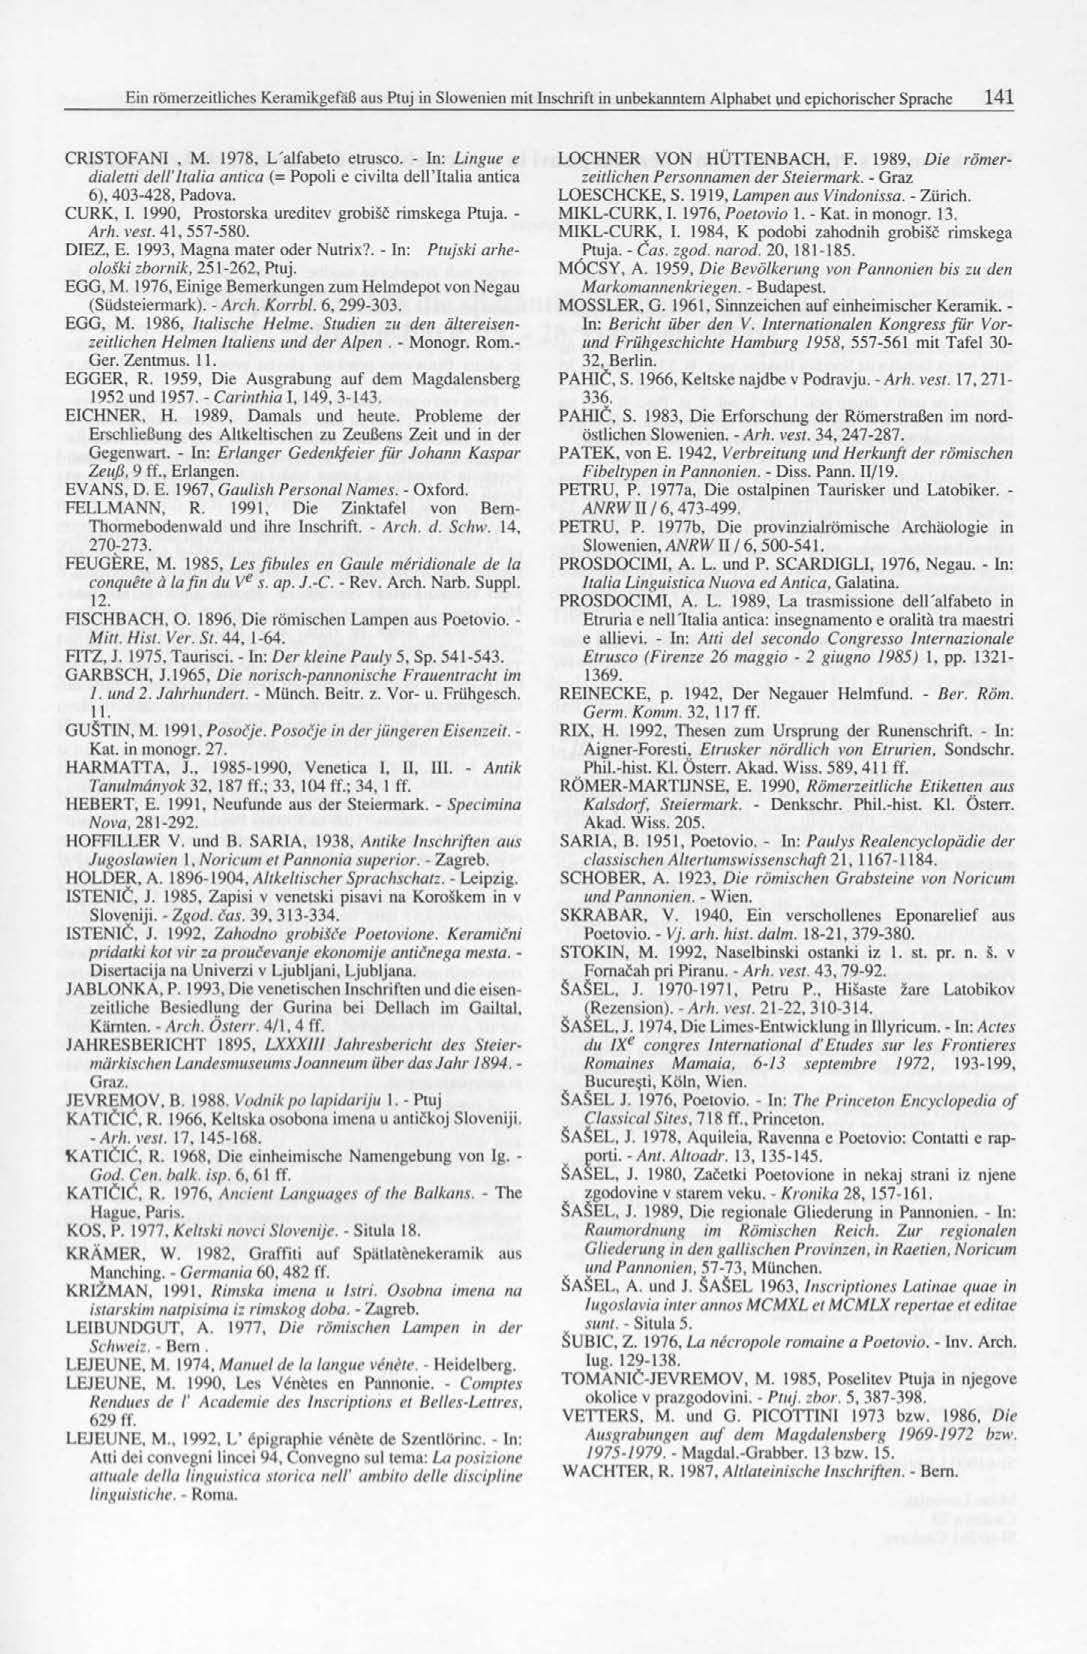 CRISTOFANI, M. 1978, L'alfabeto etrusco. - In: Lingue e dialelti dell'ltalia antica (= Popoli e civilta dellttalia antica 6), 403-428, Padova. CURK, I.